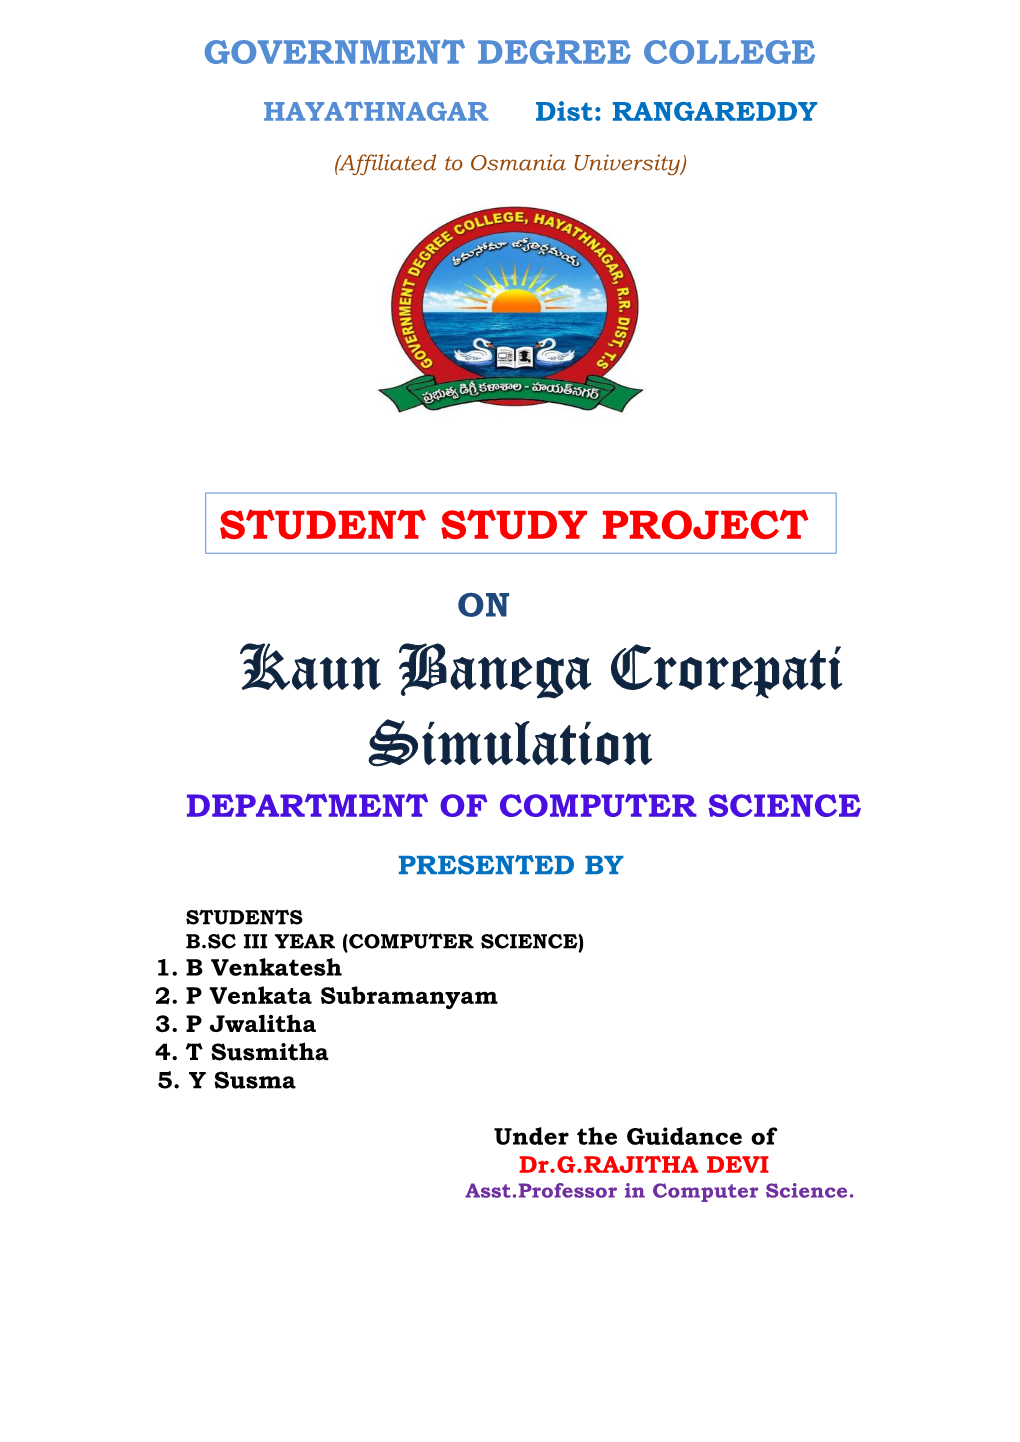 Kaun Banega Crorepati Simulation DEPARTMENT of COMPUTER SCIENCE